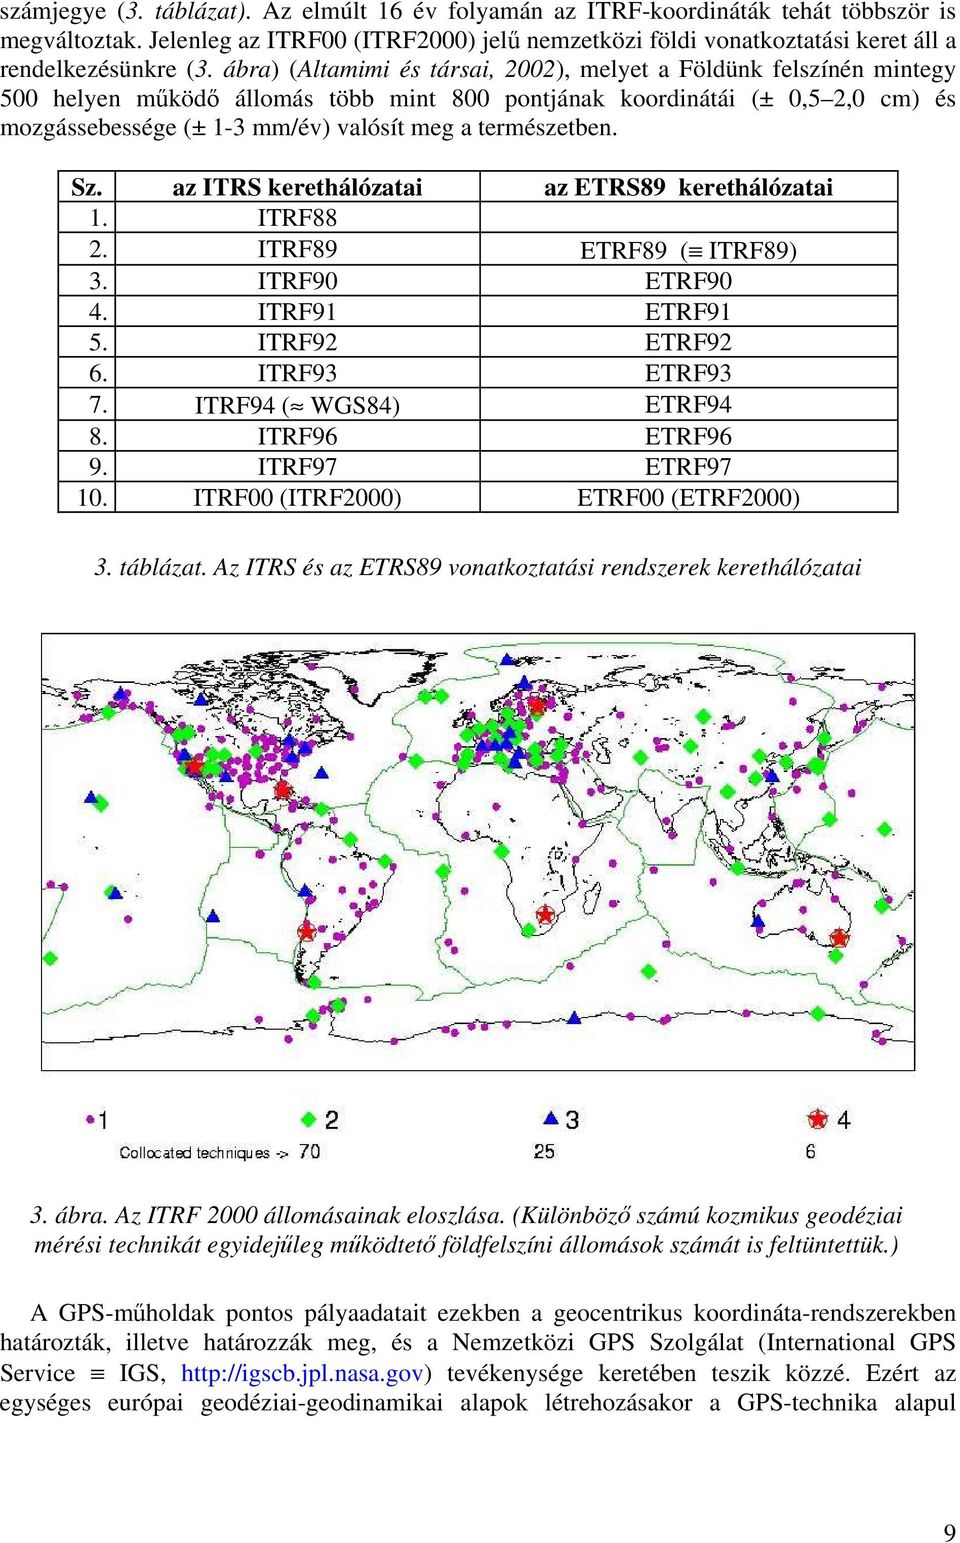 ábra) (Altamimi és társai, 2002), melyet a Földünk felszínén mintegy 500 helyen működő állomás több mint 800 pontjának koordinátái (± 0,5 2,0 cm) és mozgássebessége (± 1-3 mm/év) valósít meg a